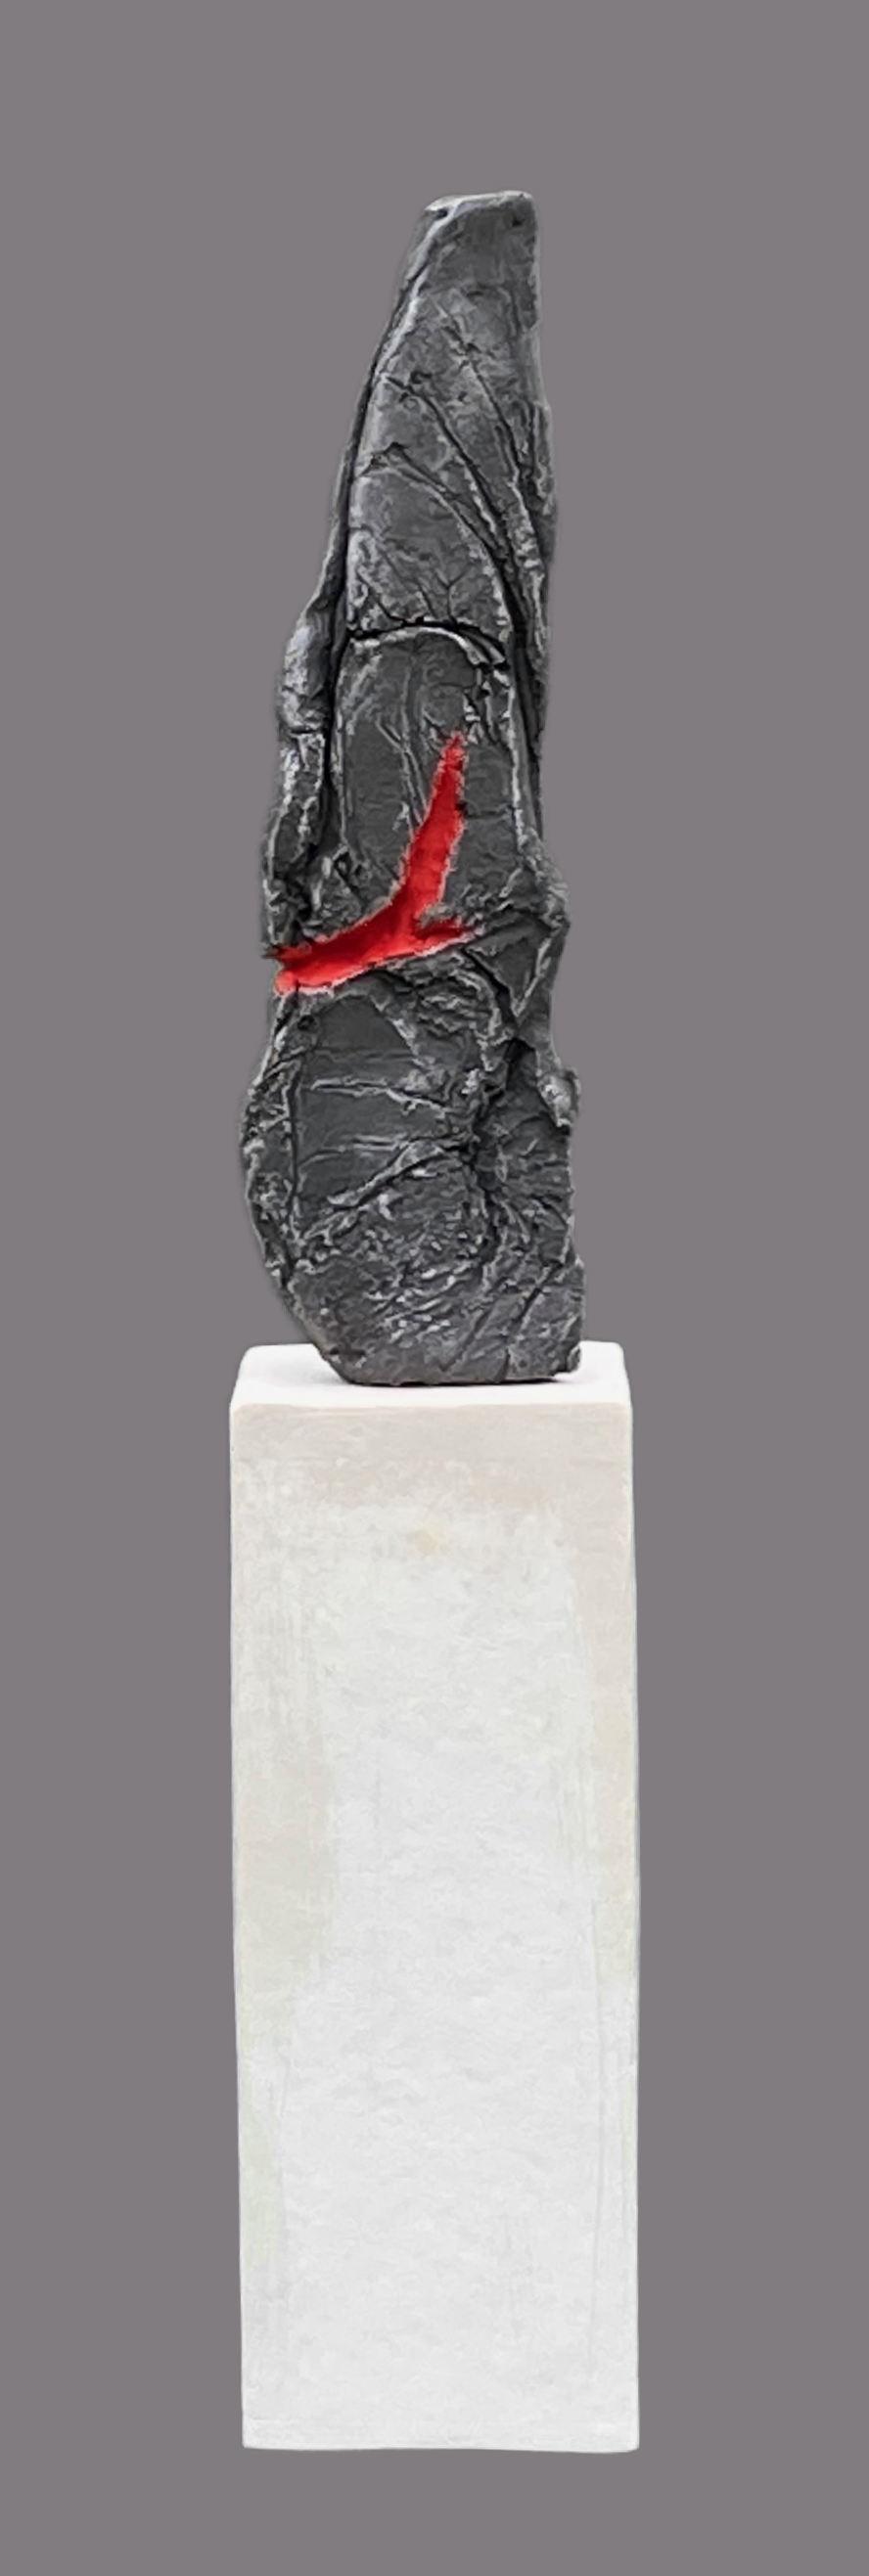 Untitled, 50cm x 10cm x 10cm, cold cast in jesmonite